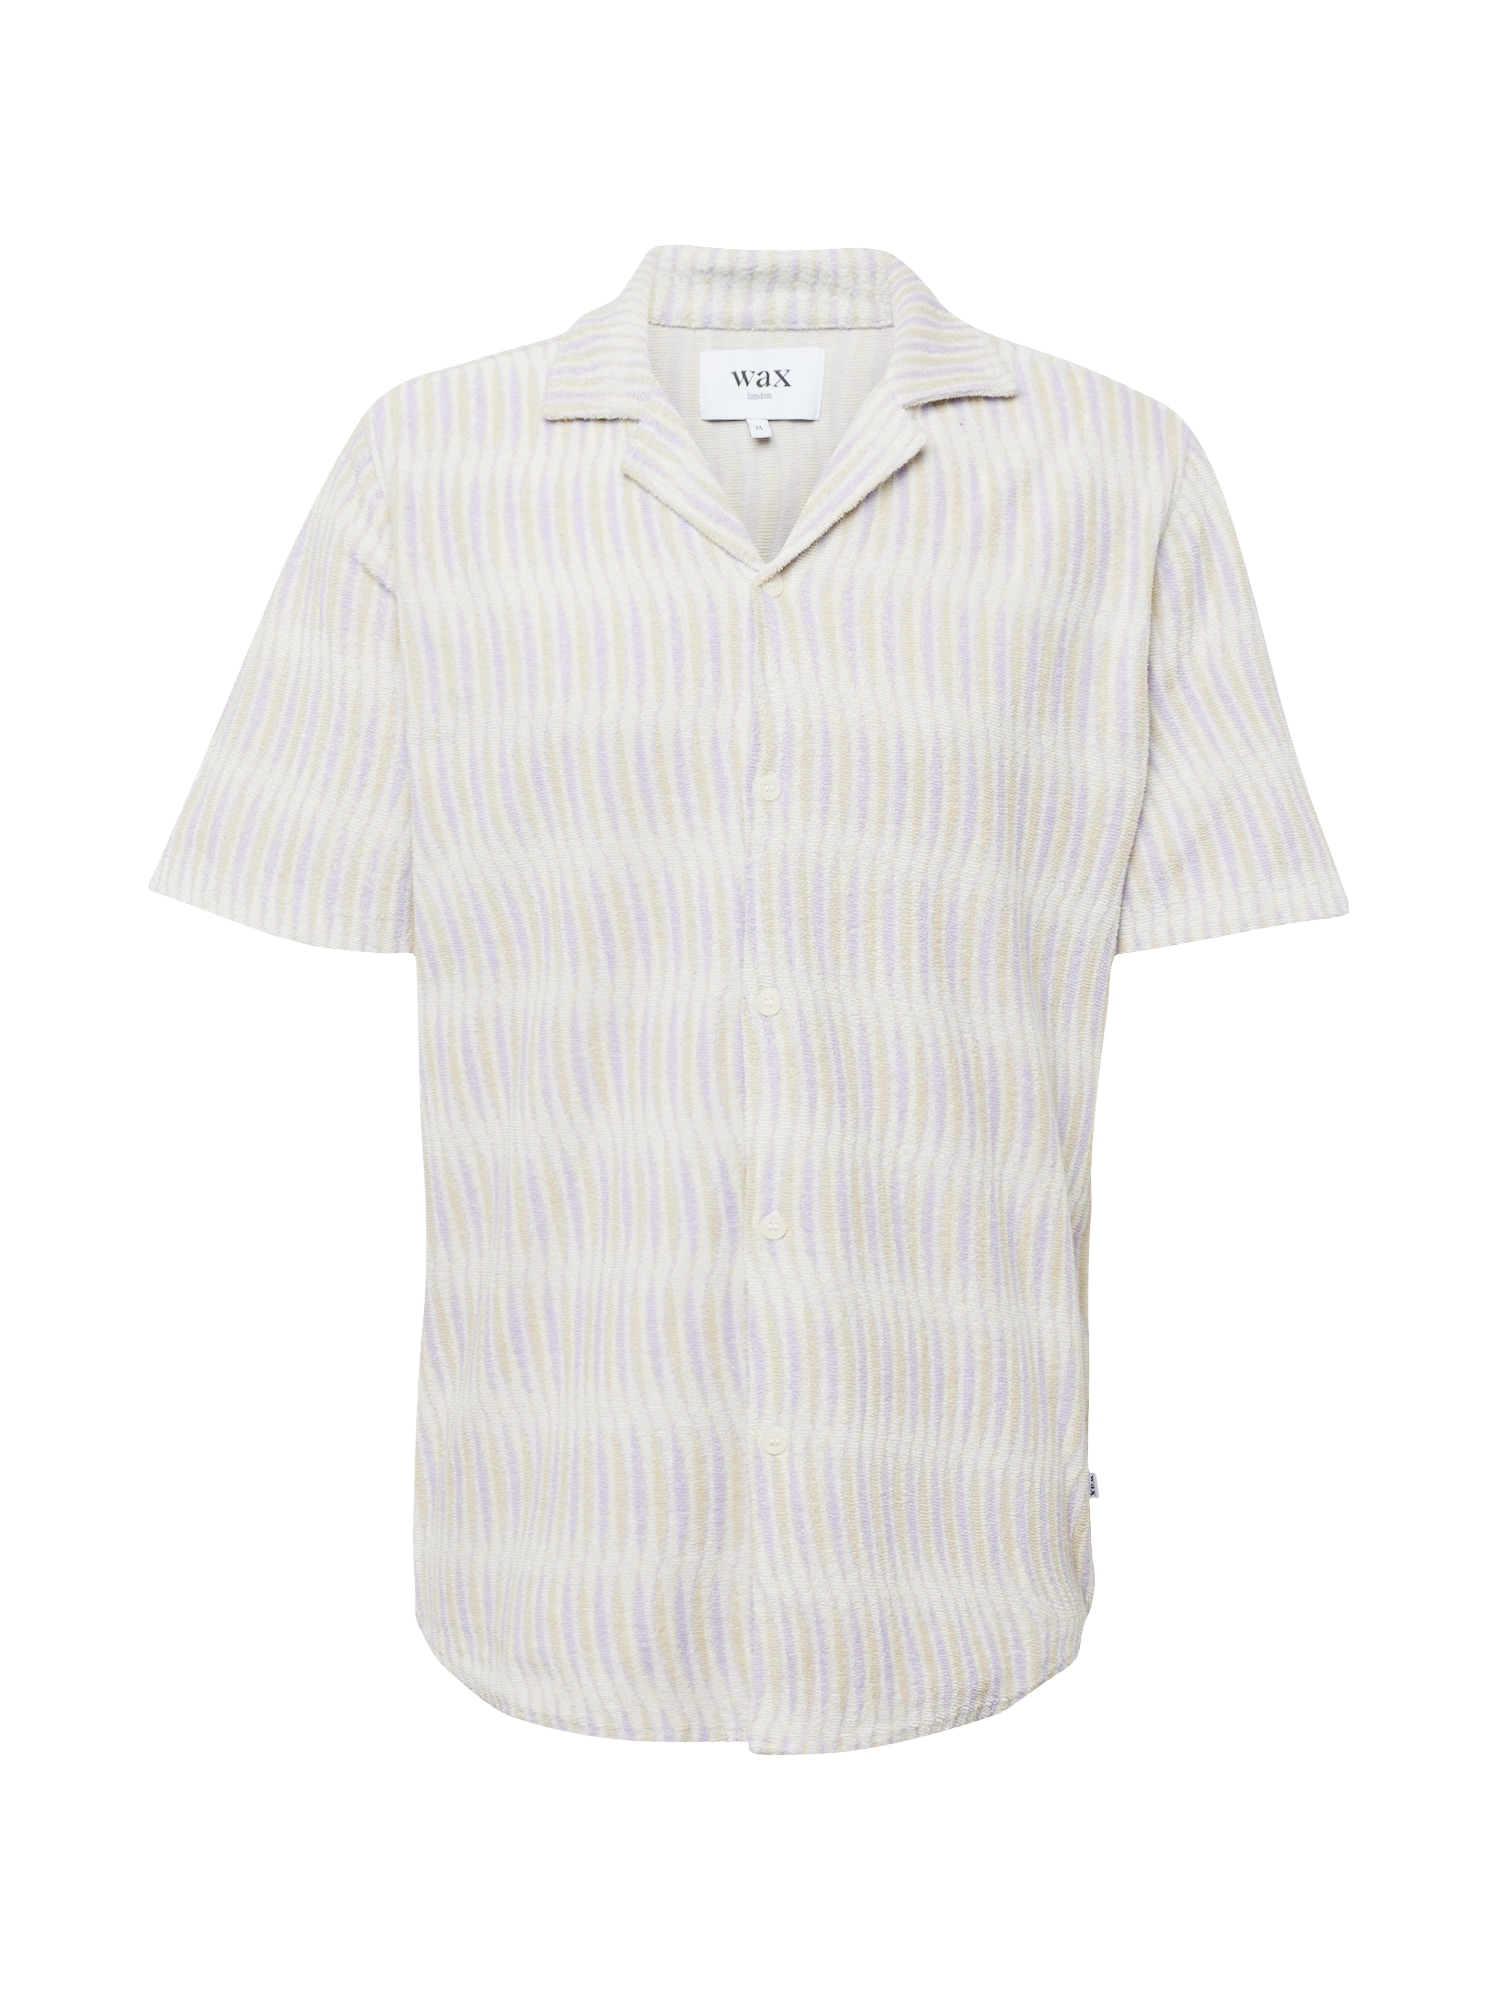 Wax London Marškiniai 'DIDCOT' nebalintos drobės spalva / garstyčių spalva / alyvinė spalva